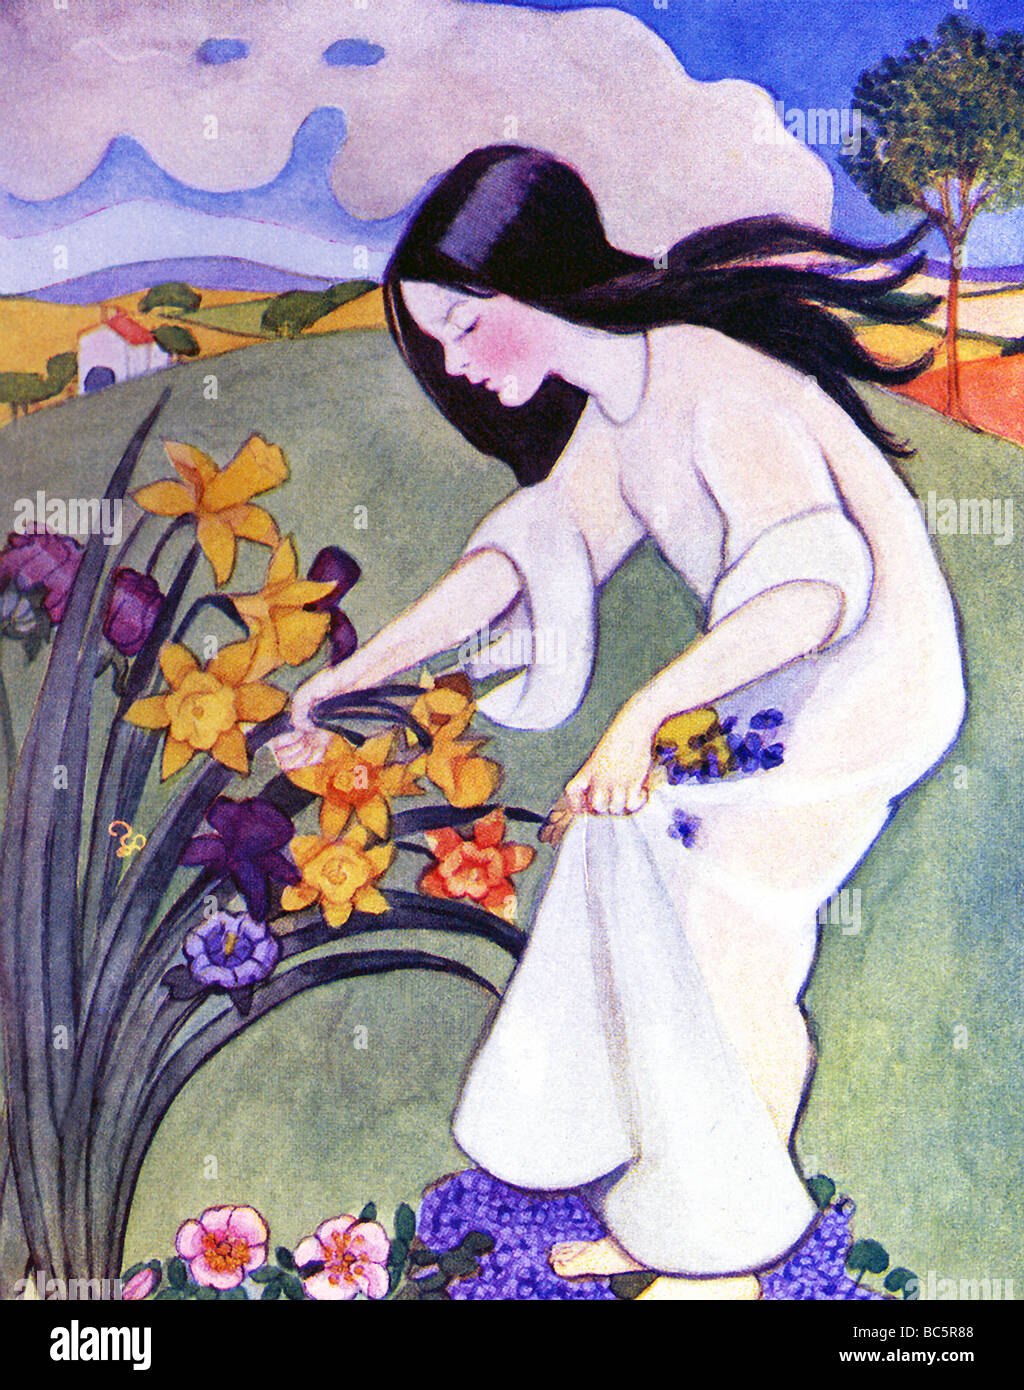 Persefone (Proserpina in latino) raccoglie i fiori appena prima, acorrding alla mitologia greca, Ade prende il suo Underworld. Foto Stock